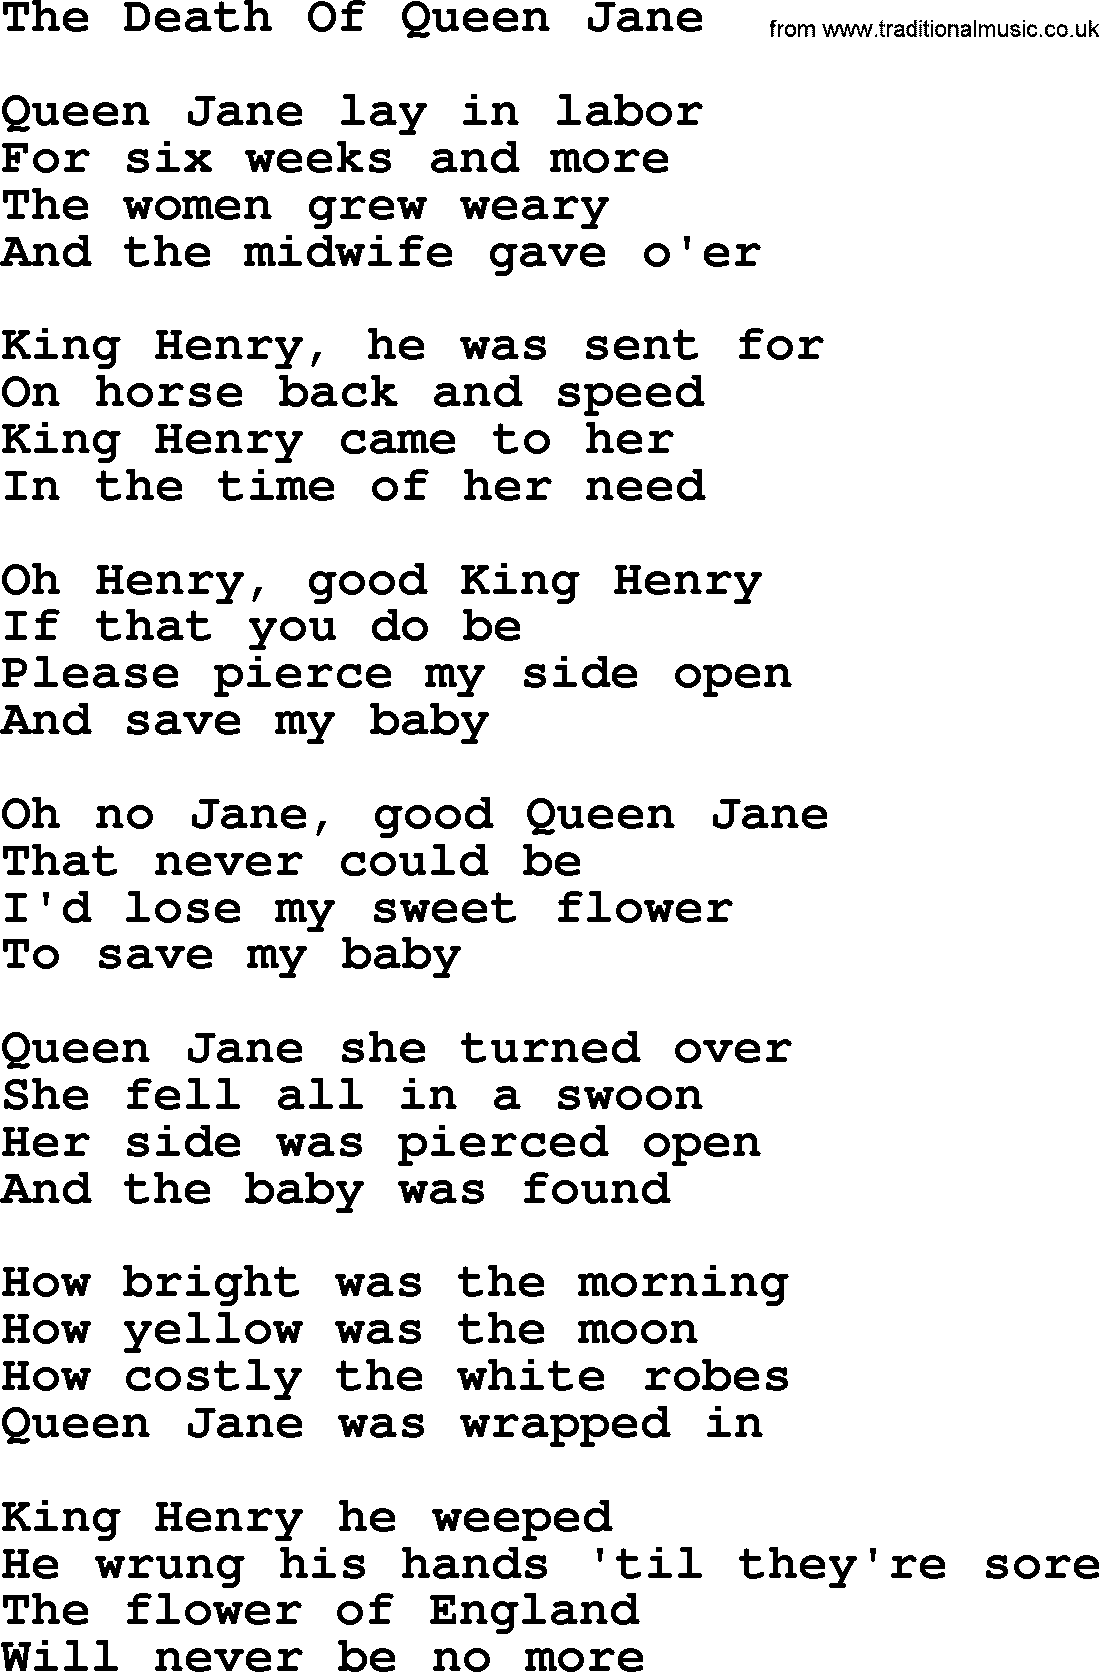 Joan Baez song The Death Of Queen Jane, lyrics